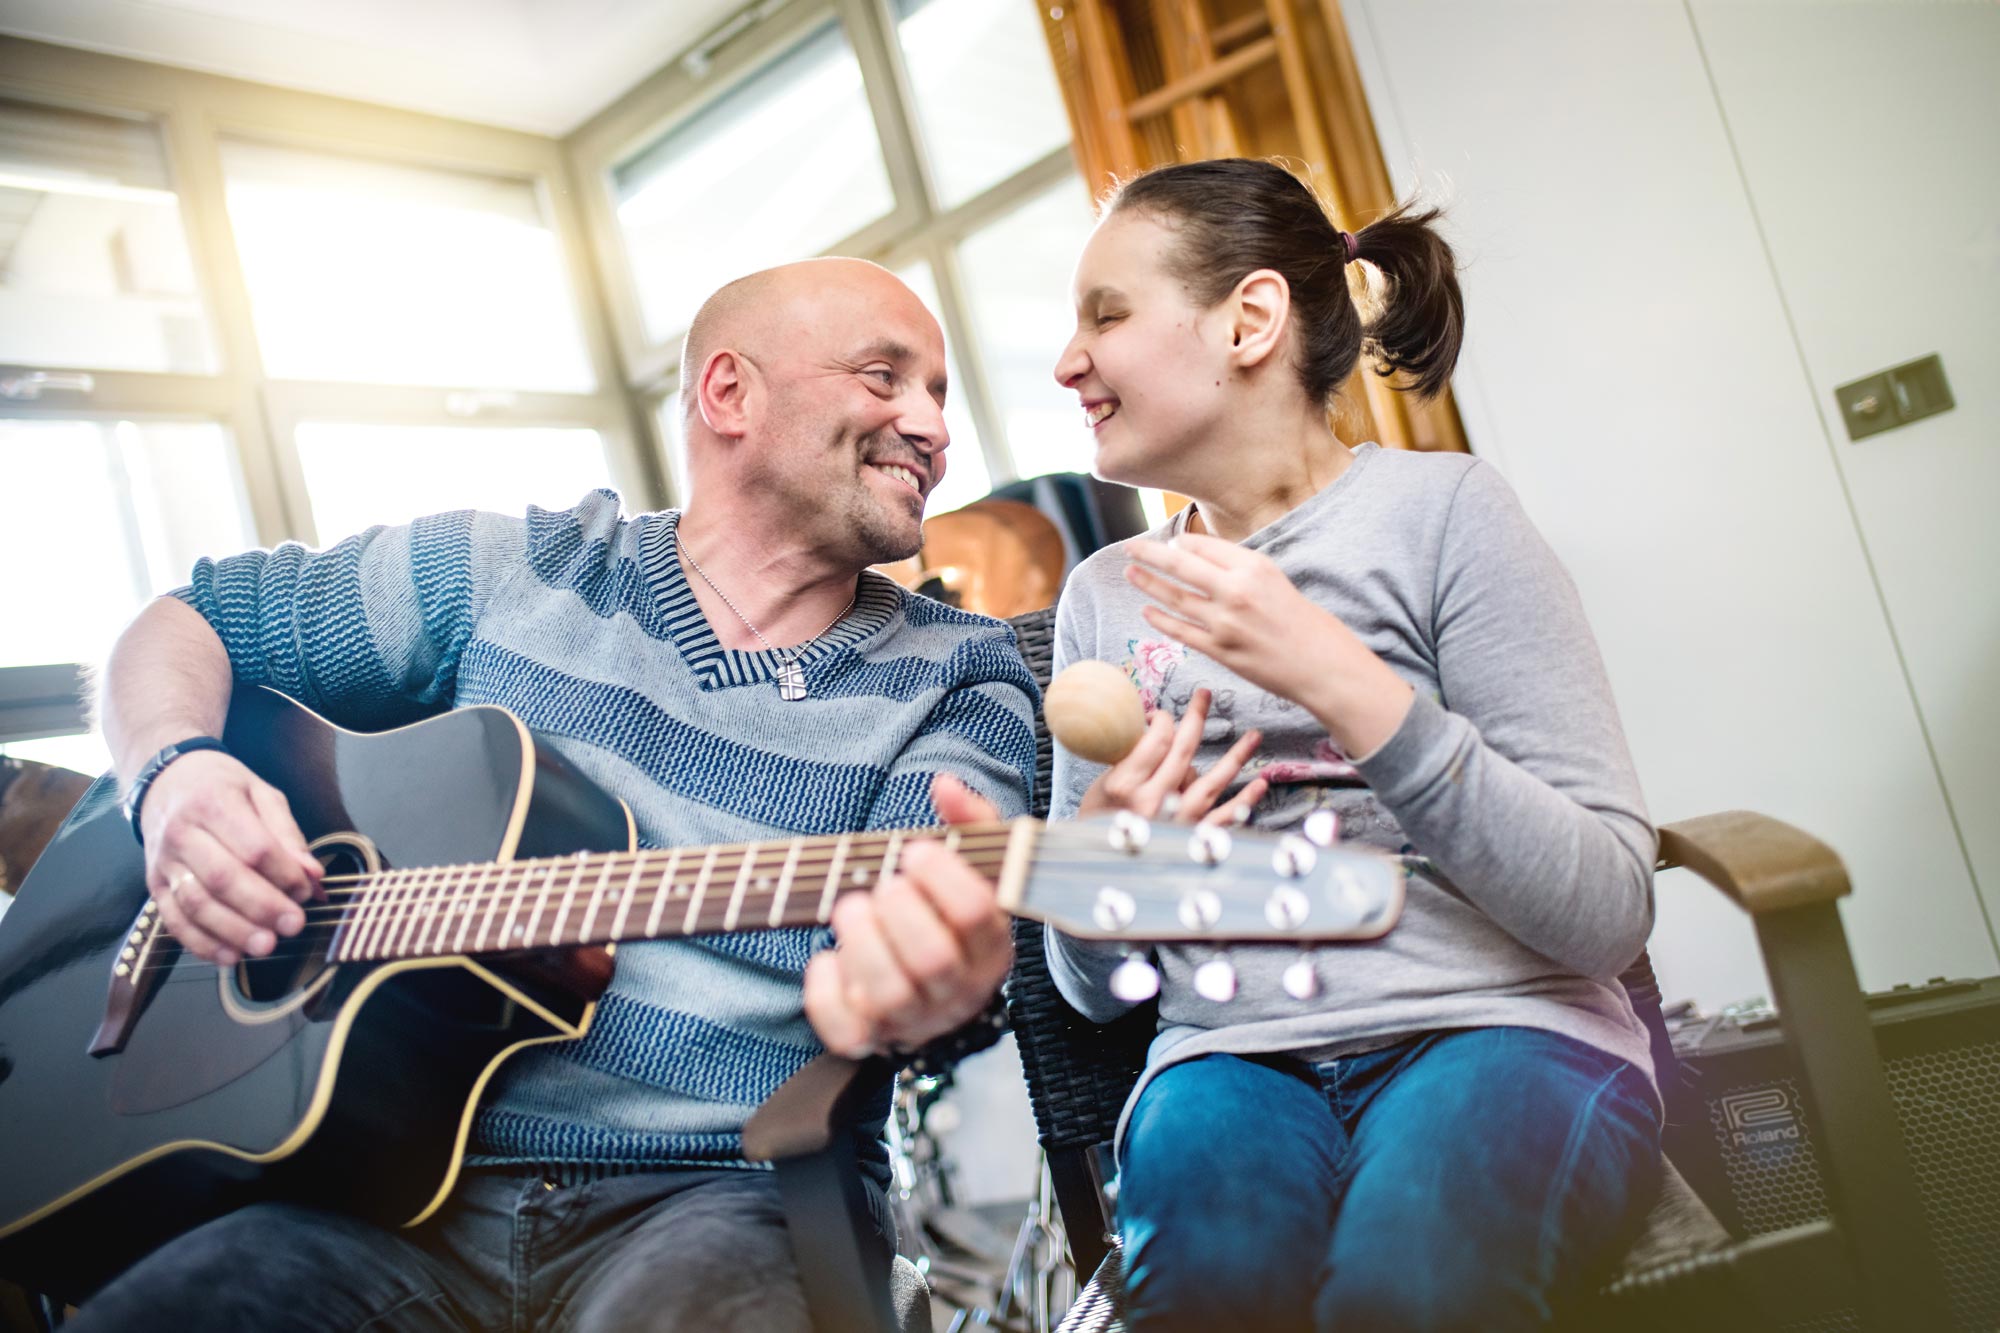 3-Nikolauspflege-Pflegedienst-Arbeit-mit-behinderten-Menschen-Musik-Mann-beim-Gitarrespielen-Lachen-Freude-Pfleger-Klient.jpg